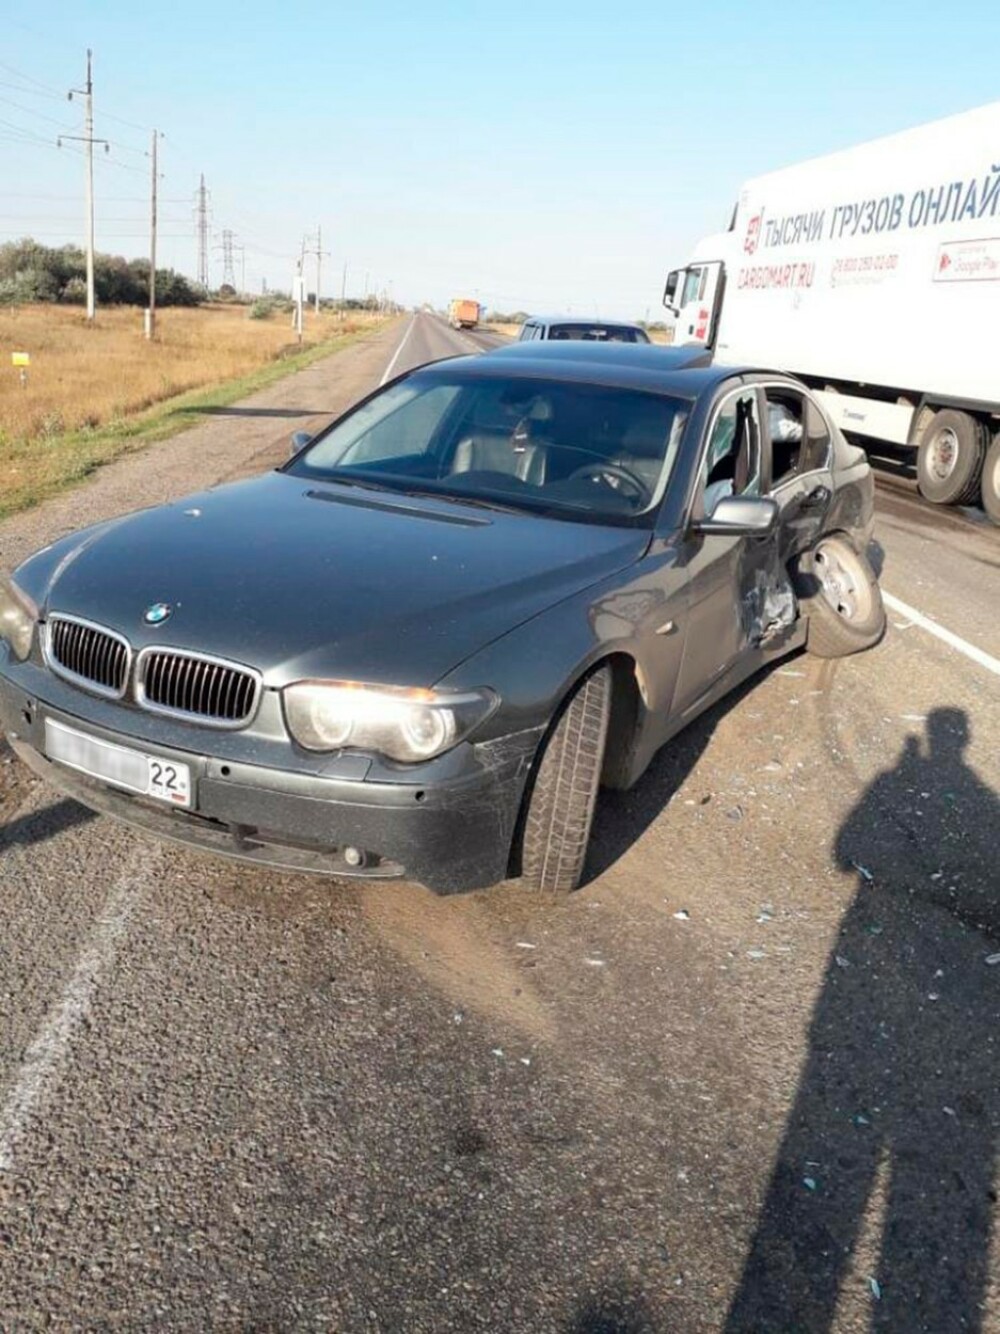 Polițiștii ajunși la un accident au rămas uimiți când au văzut cine era la volan - Imaginea 2